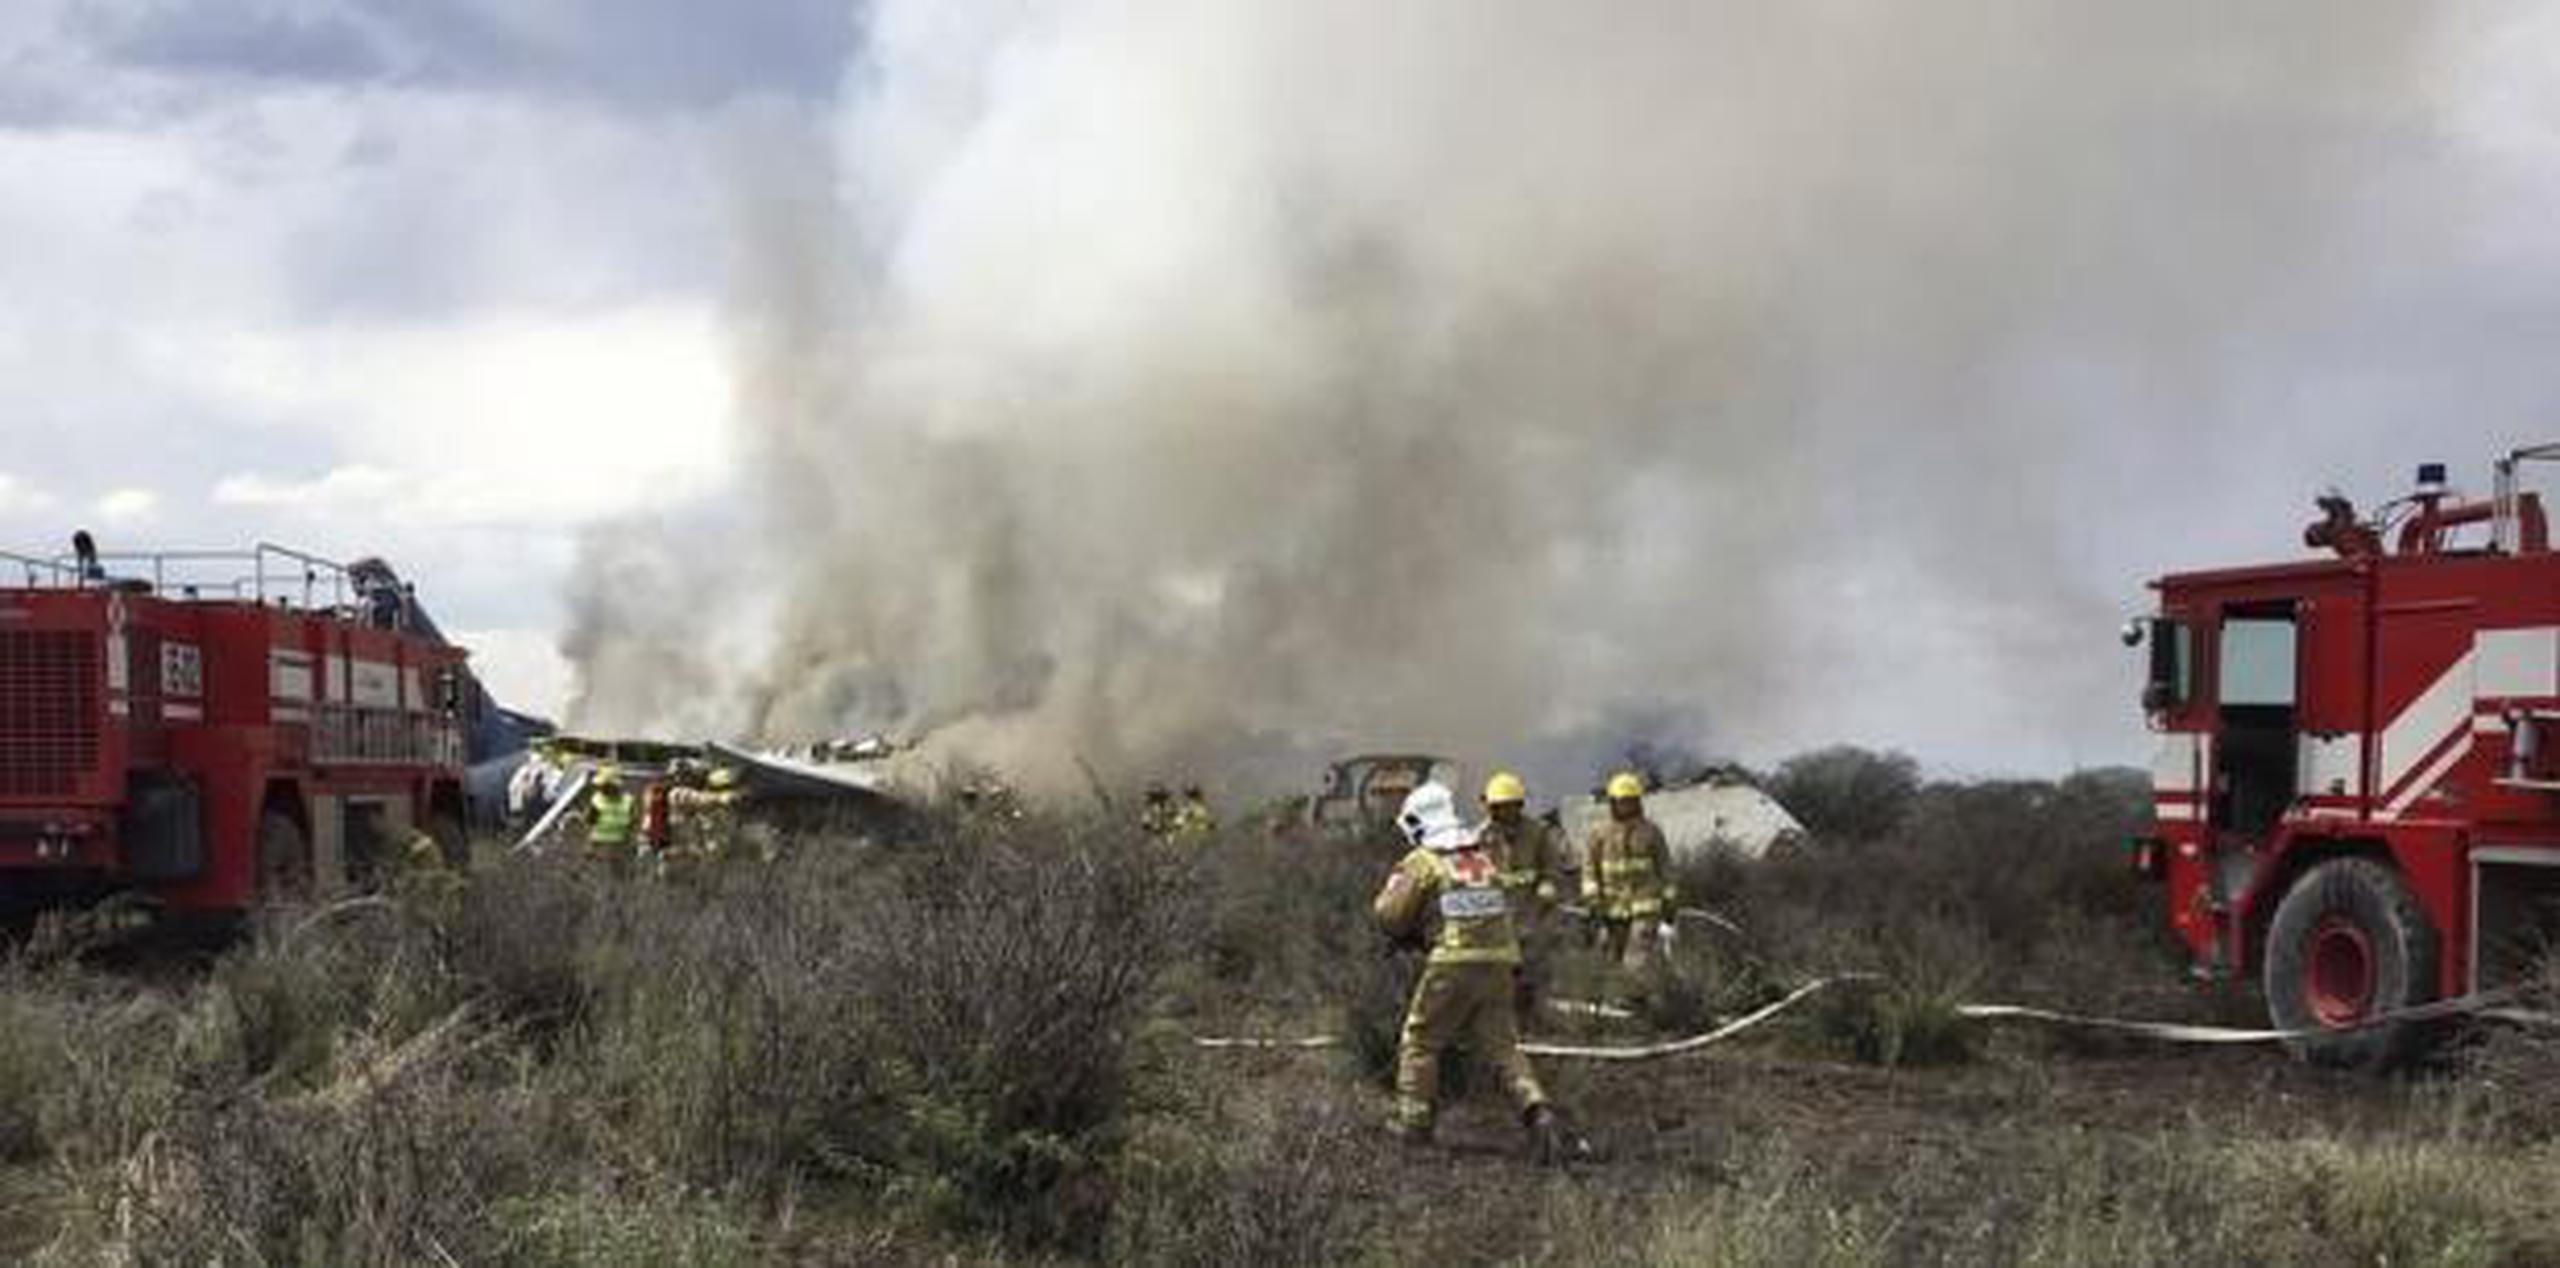 Según las autoridades, el choque hizo que las dos turbinas del avión Embraer 190 se desprendiesen, provocando un incendio de inmediato en las alas. (Oficina de Defensa Civil de Durango vía AP)